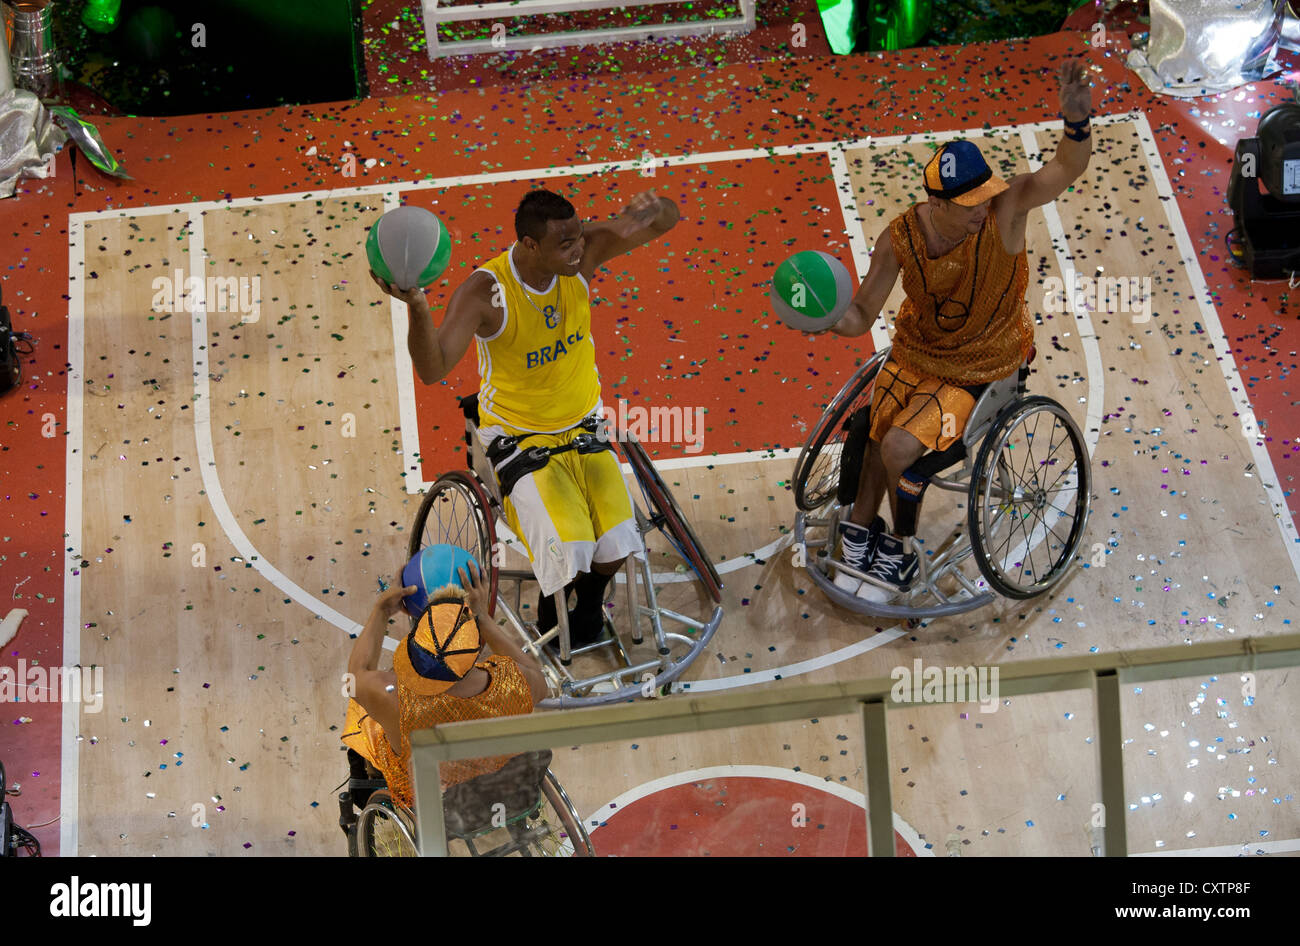 Carnaval de flottement de basket-ball des Jeux paralympiques de Rio de Janeiro Brésil Banque D'Images